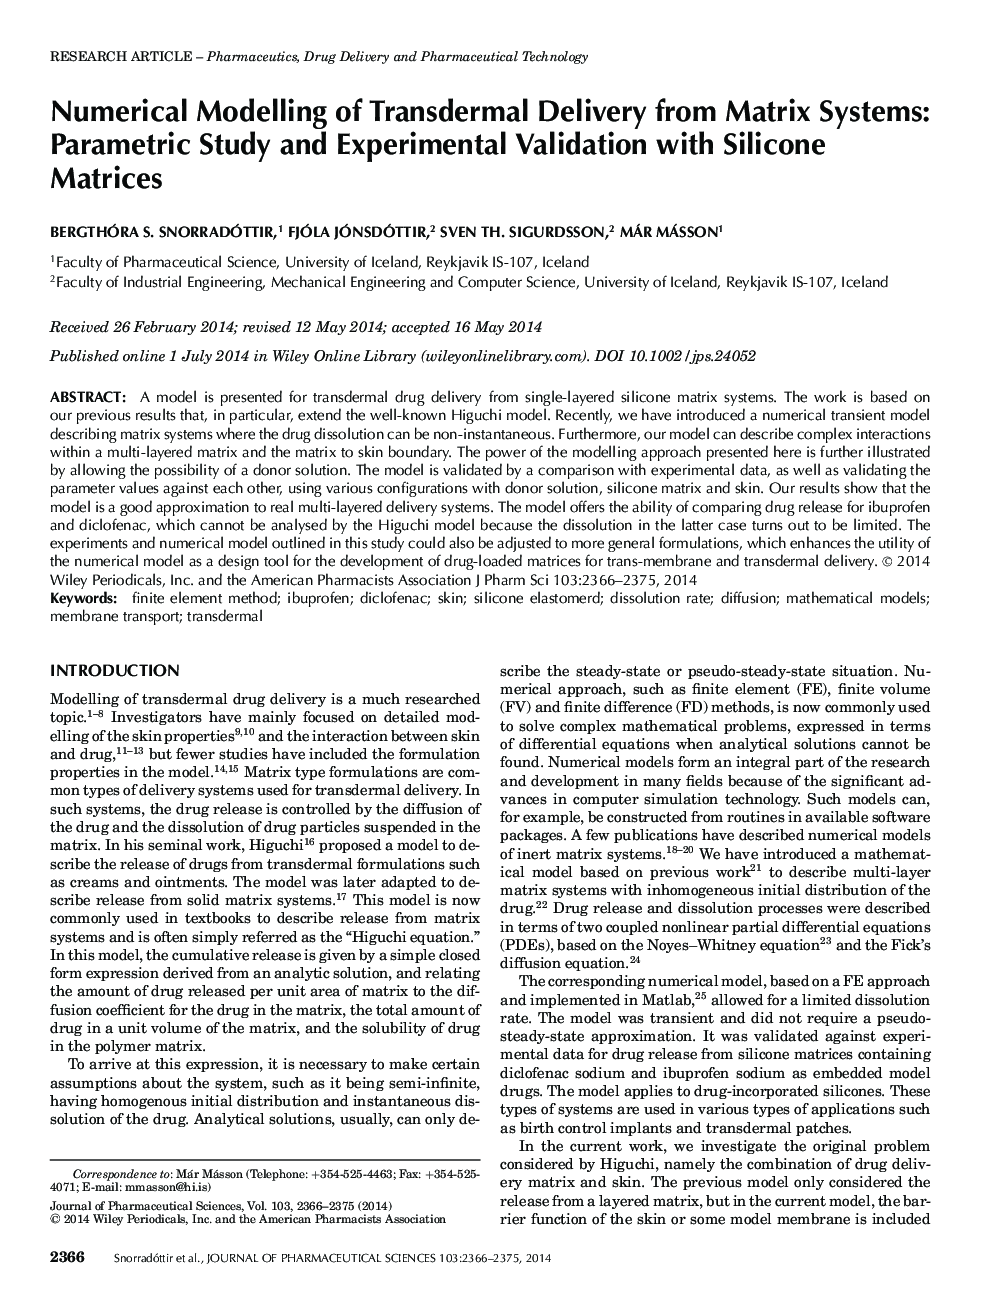 مدل سازی عددی تحویل ترمیمی از سیستم های ماتریکس: مطالعه پارامتری و اعتبار تجربی با ماتریس های سیلیکون 